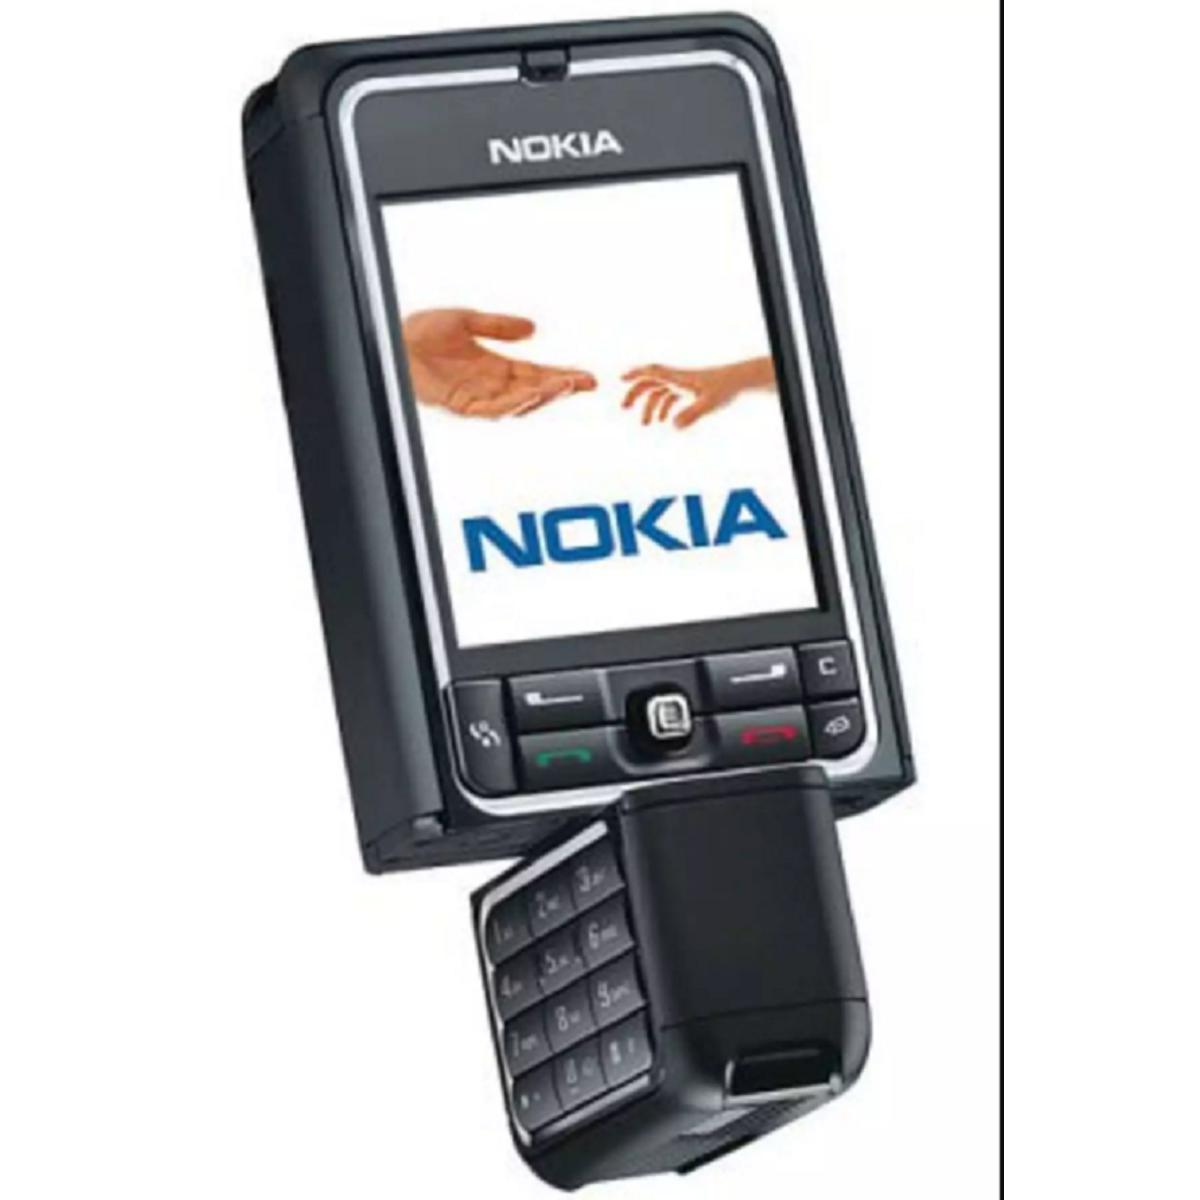 Full Body Housing For Nokia 6600 Mobile